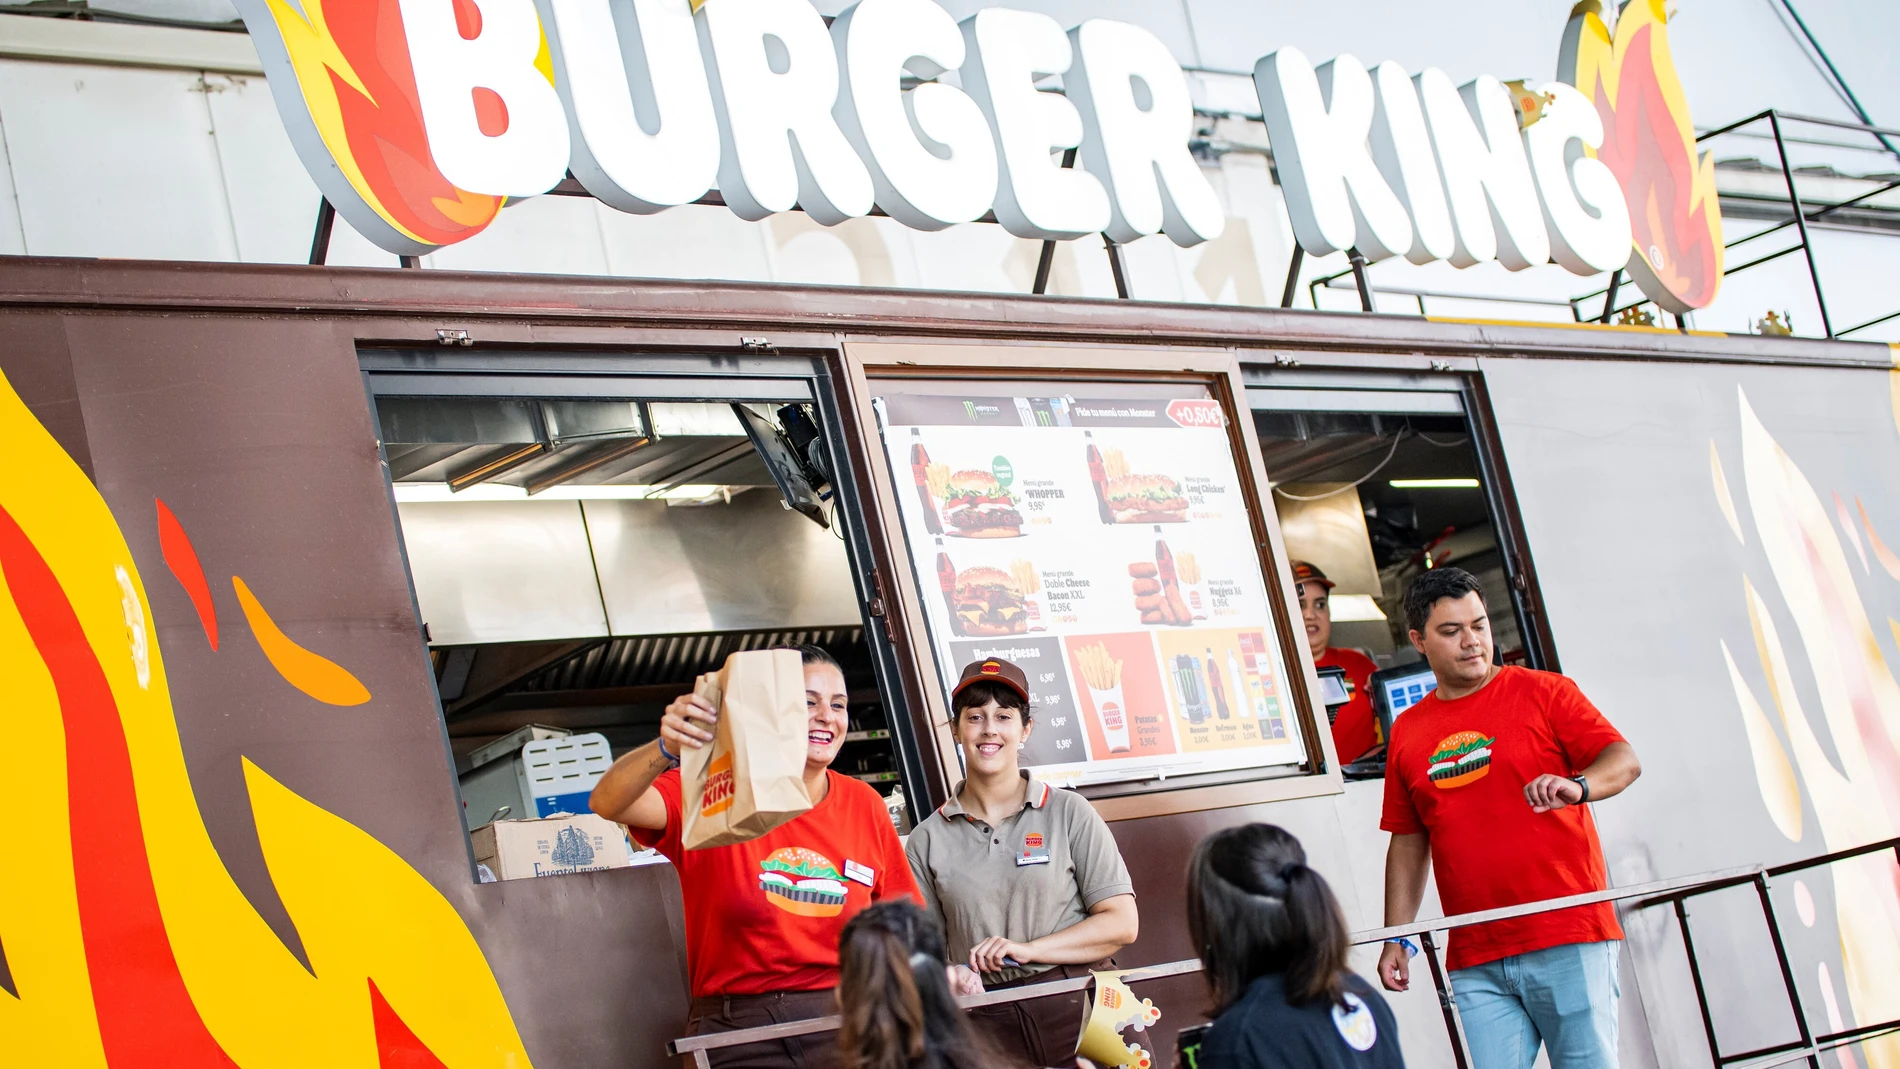 El acuerdo entre ambas marcas permitirá a los asistentes conocer en persona a jugadores y streamers de Giants Gaming, acceder a ofertas especiales en menús Monster Energy de Burger King y participar en sorteos de productos de gaming